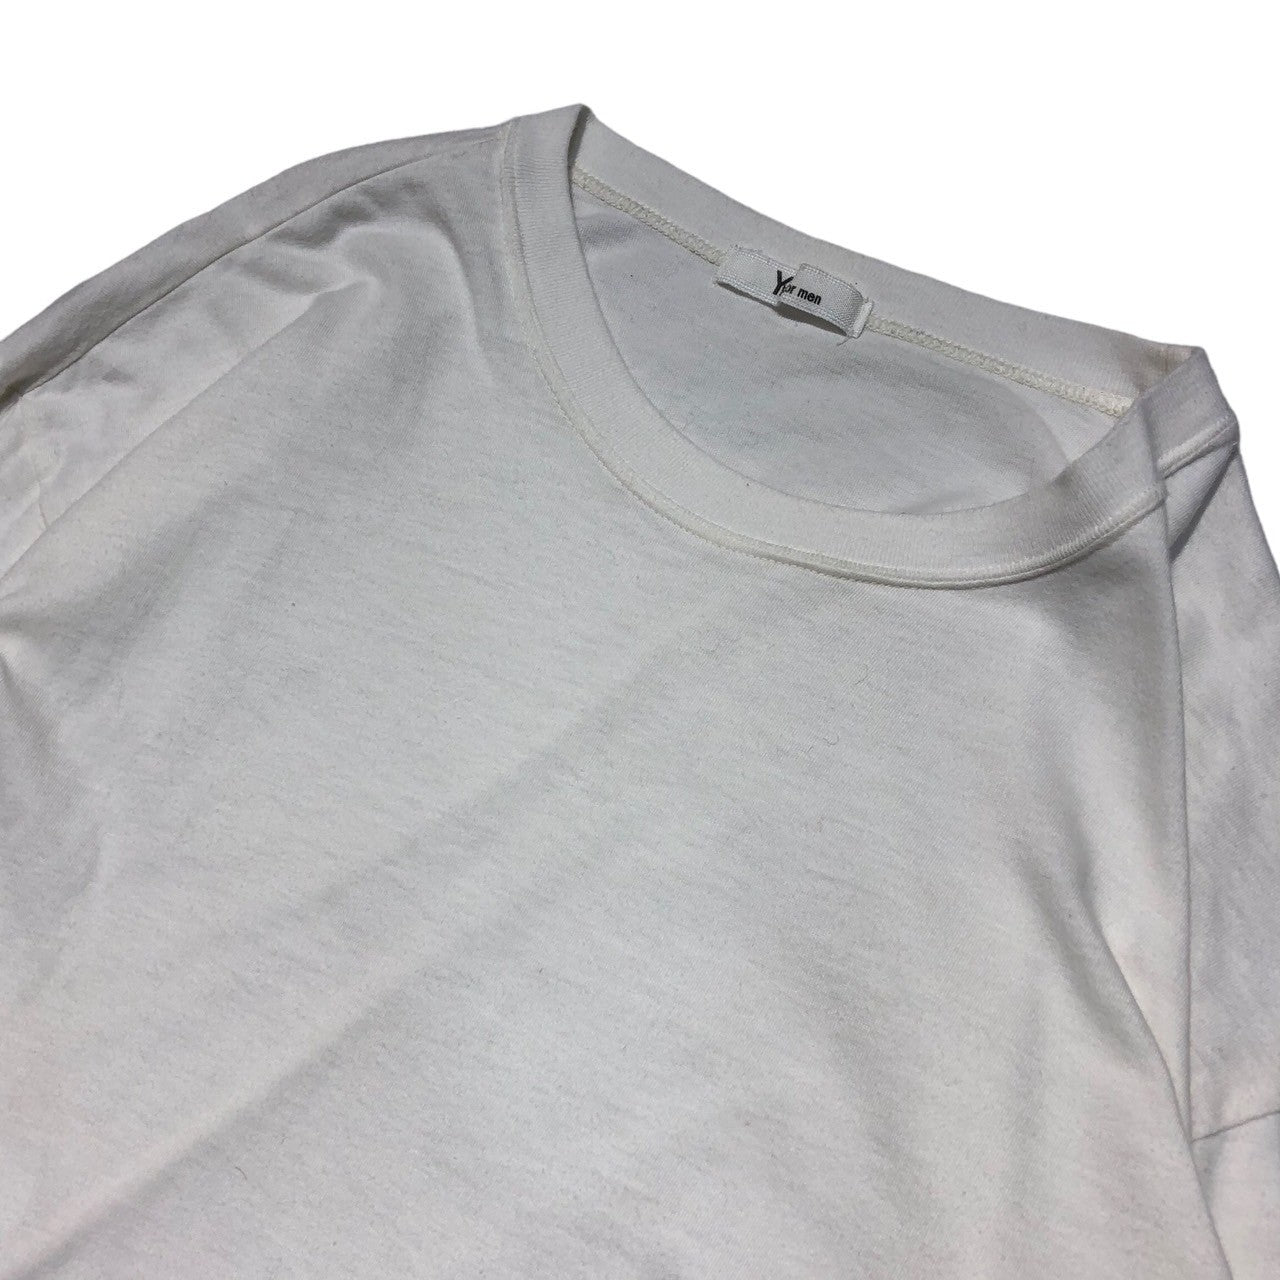 Y's for men(ワイズフォーメン) 90's Vintage one point logo long sleeve T-shirt ヴィンテージ ワンポイントロゴ ロングスリーブ Tシャツ 90年代 MT-T05-001 表記なし(FREE) ホワイト×ブラック